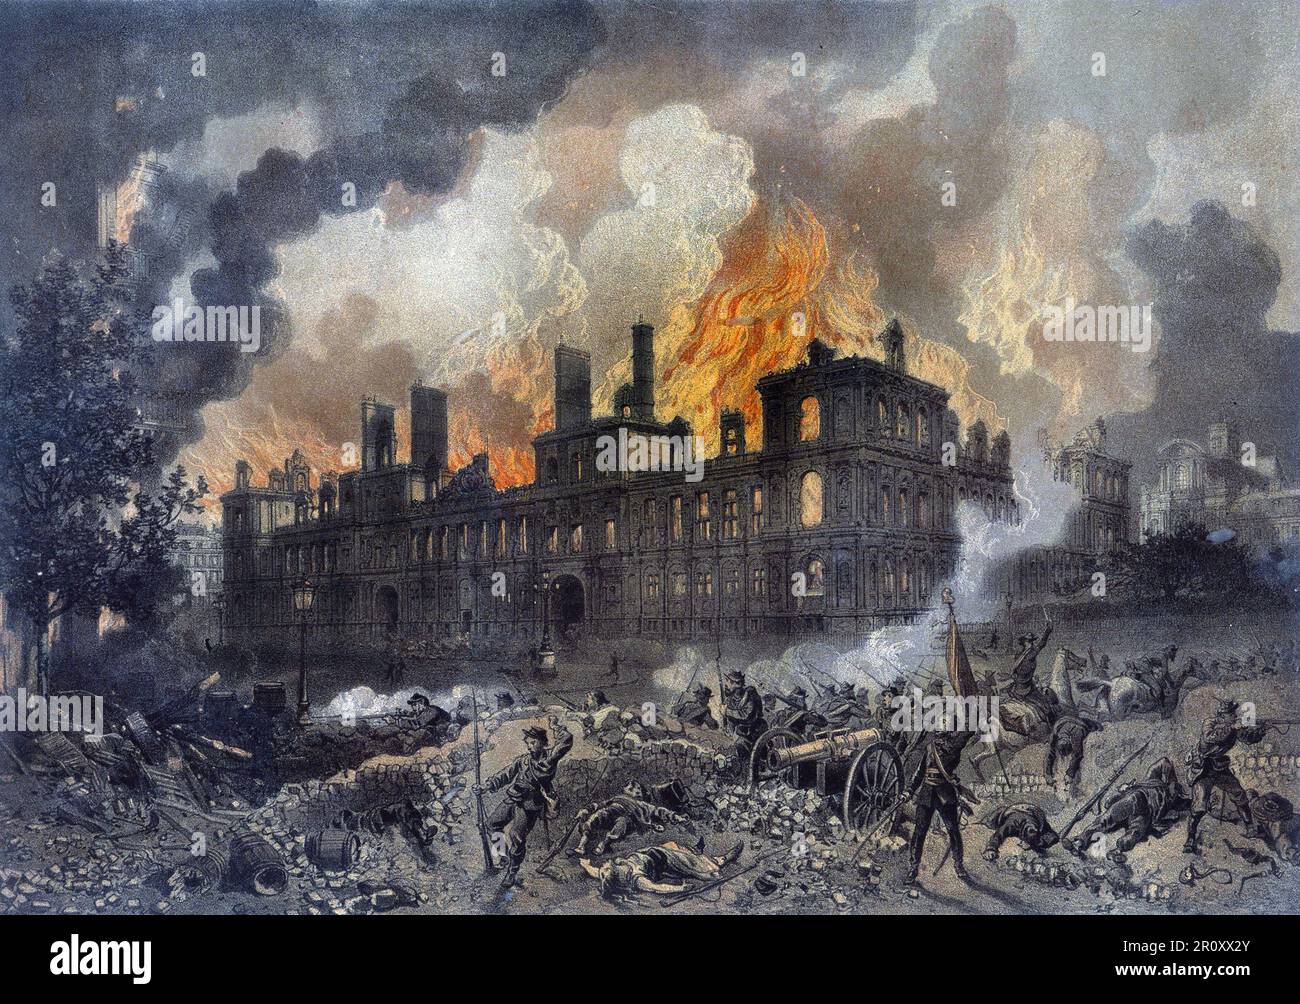 Commune de Paris : l'incendiaire de l'Hôtel de ville de Paris le 24 mai 1871. Gravure de l'époque. Banque D'Images